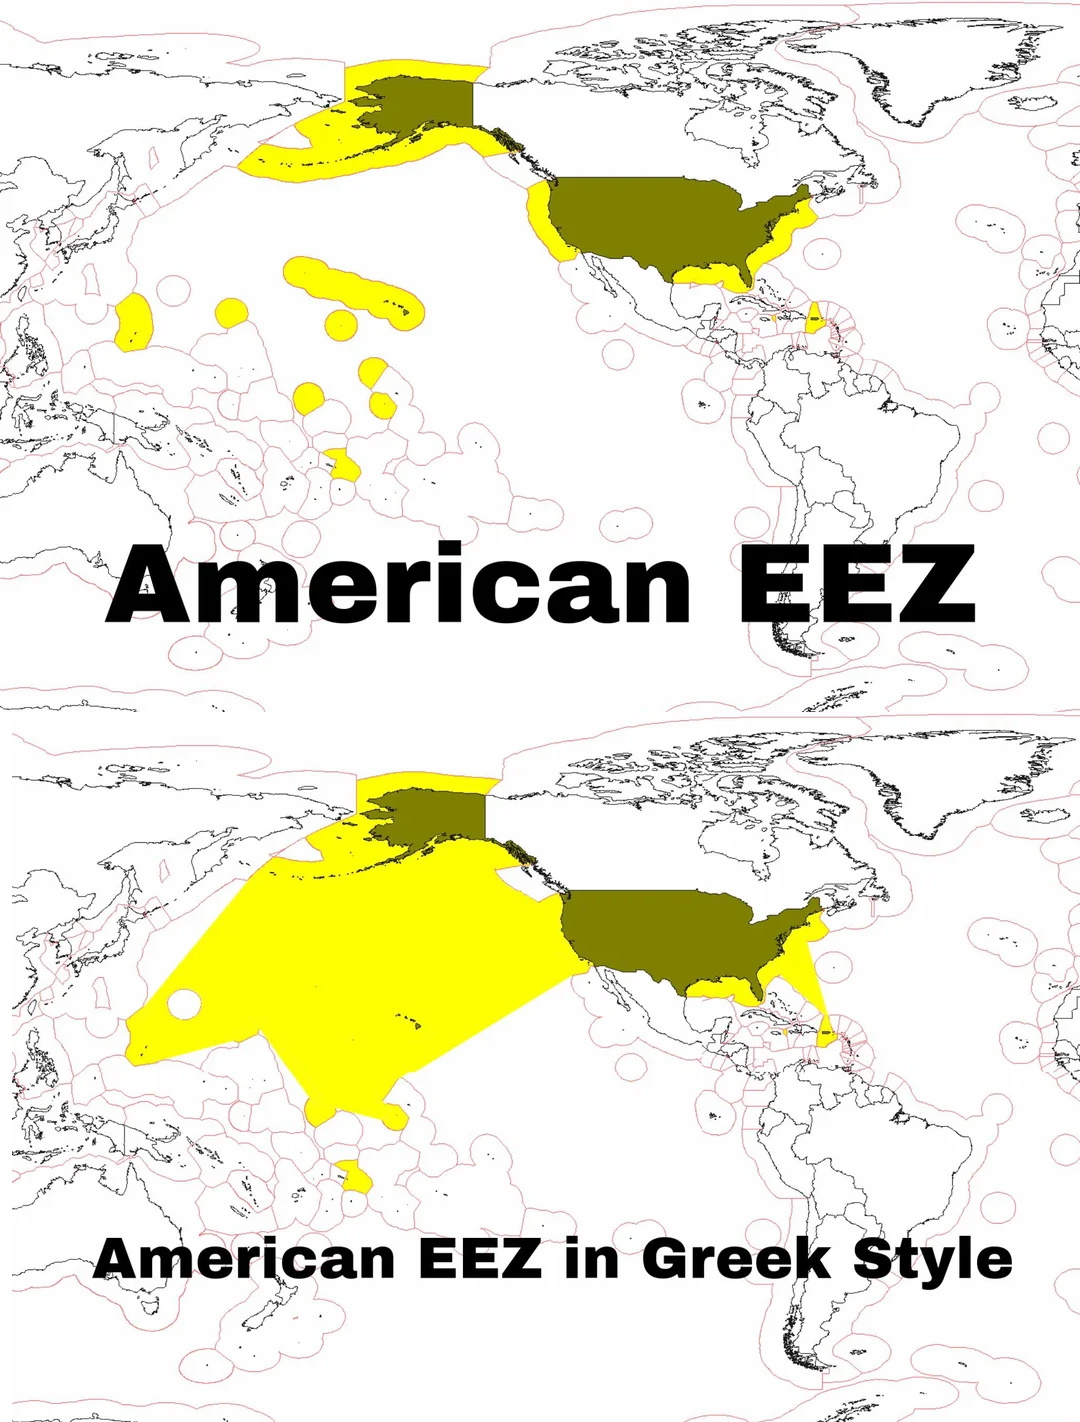 Wyłączna strefa ekonomiczna USA (EEZ - Exclusive Economic Zones)